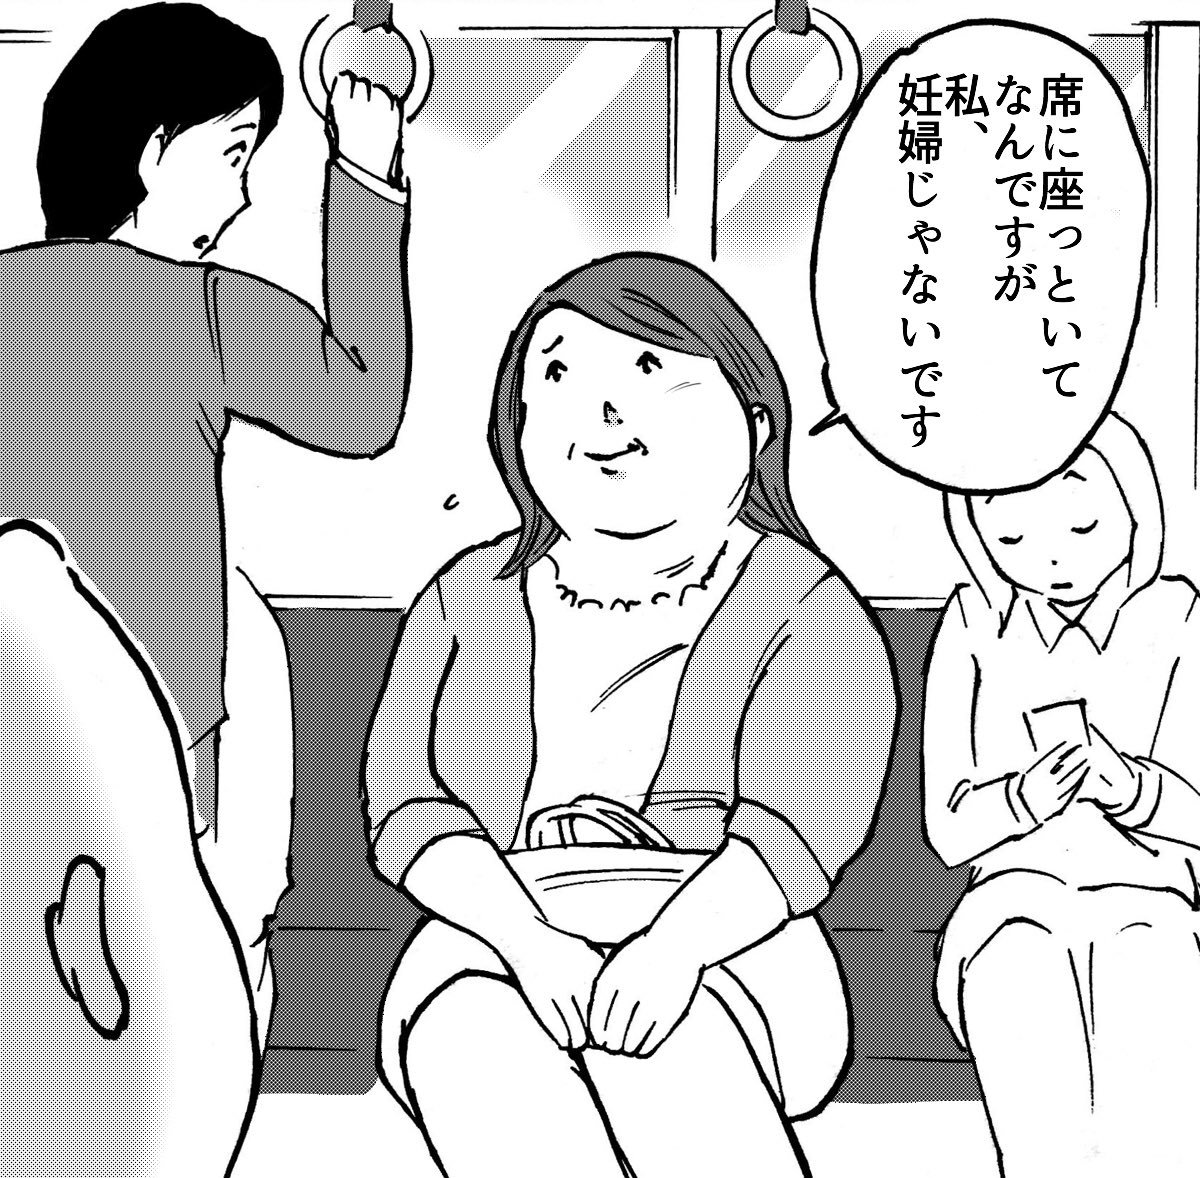 電車でサラリーマンに
席をゆずって貰った
妊婦さんが
どうしても伝えたかったこと。

#無SHOCK 